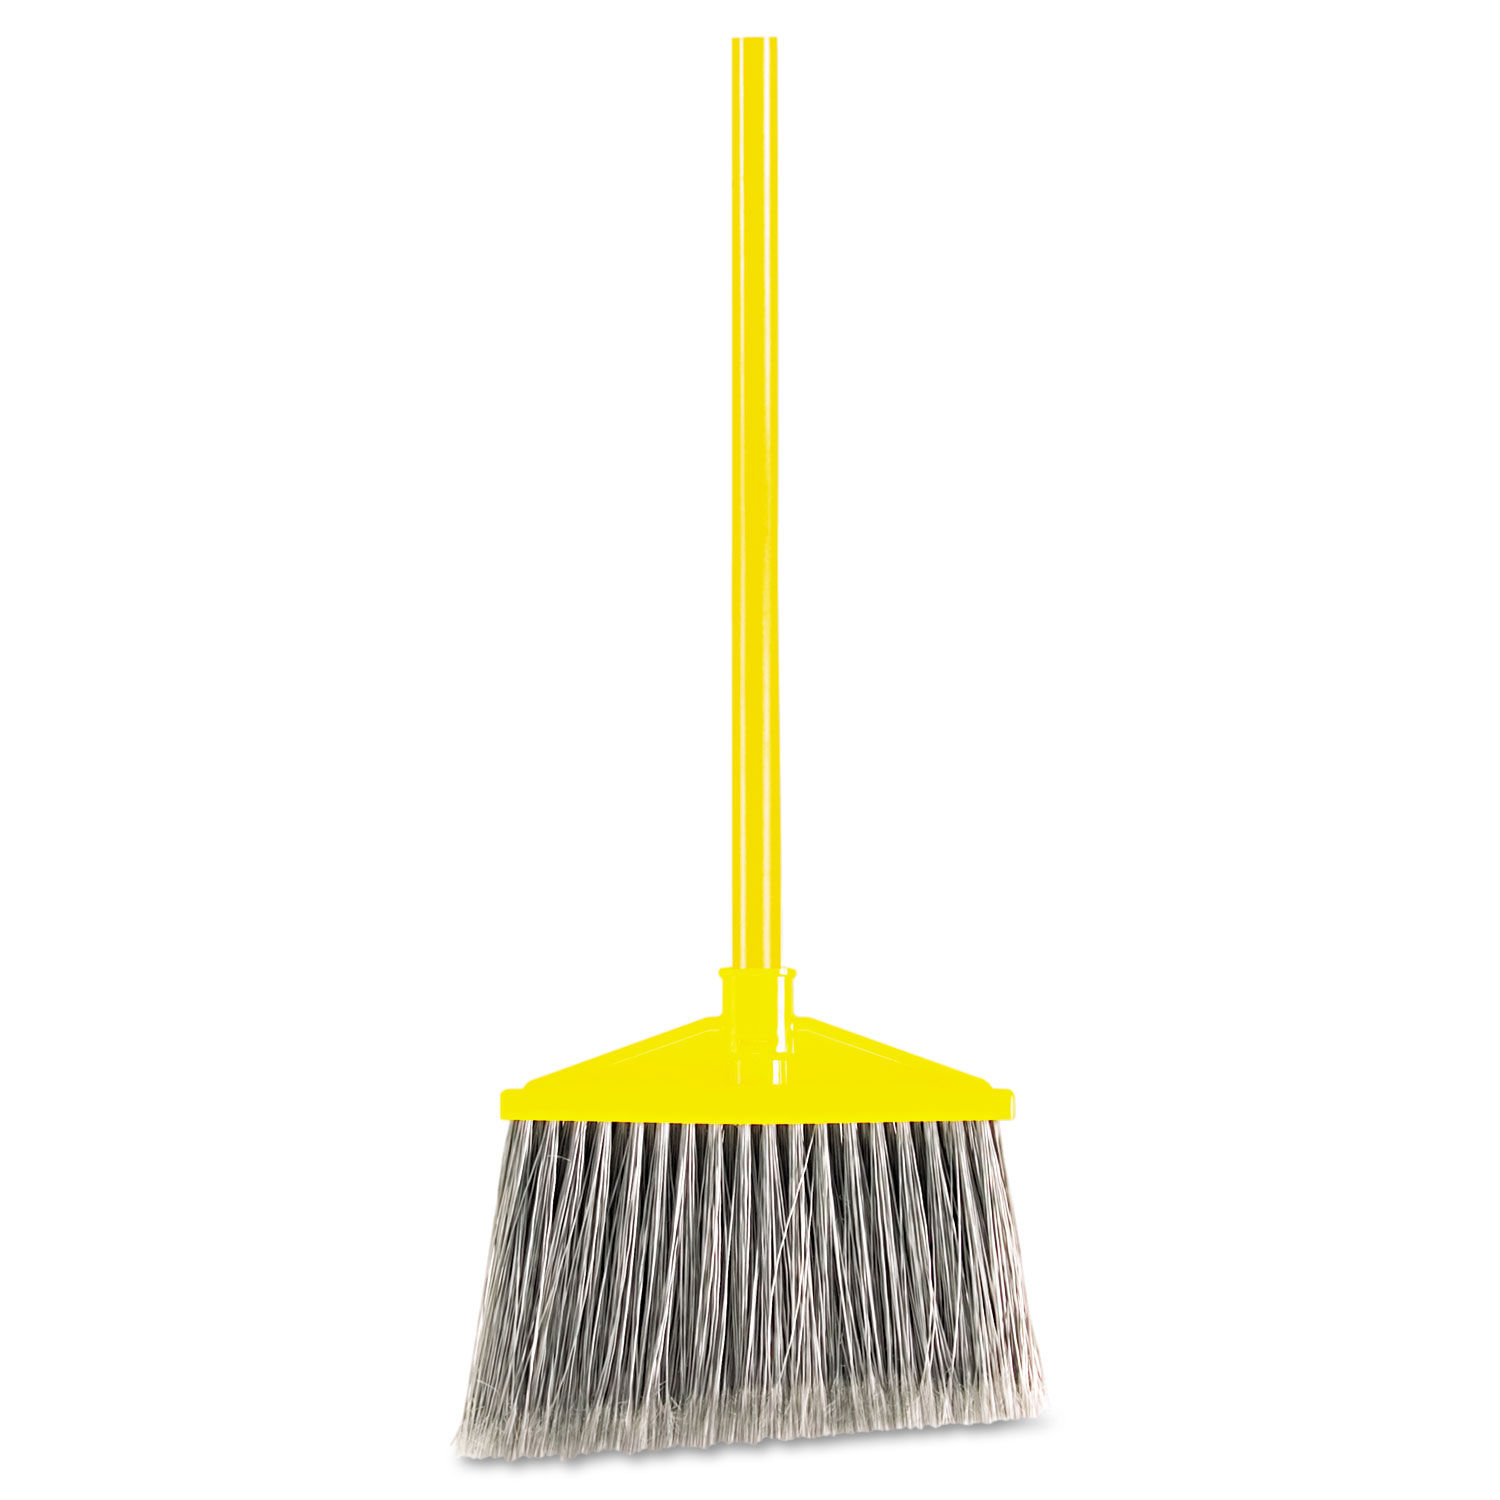 7920014588208 Angled Large Broom, 46.78" Handle, Gray/Yellow